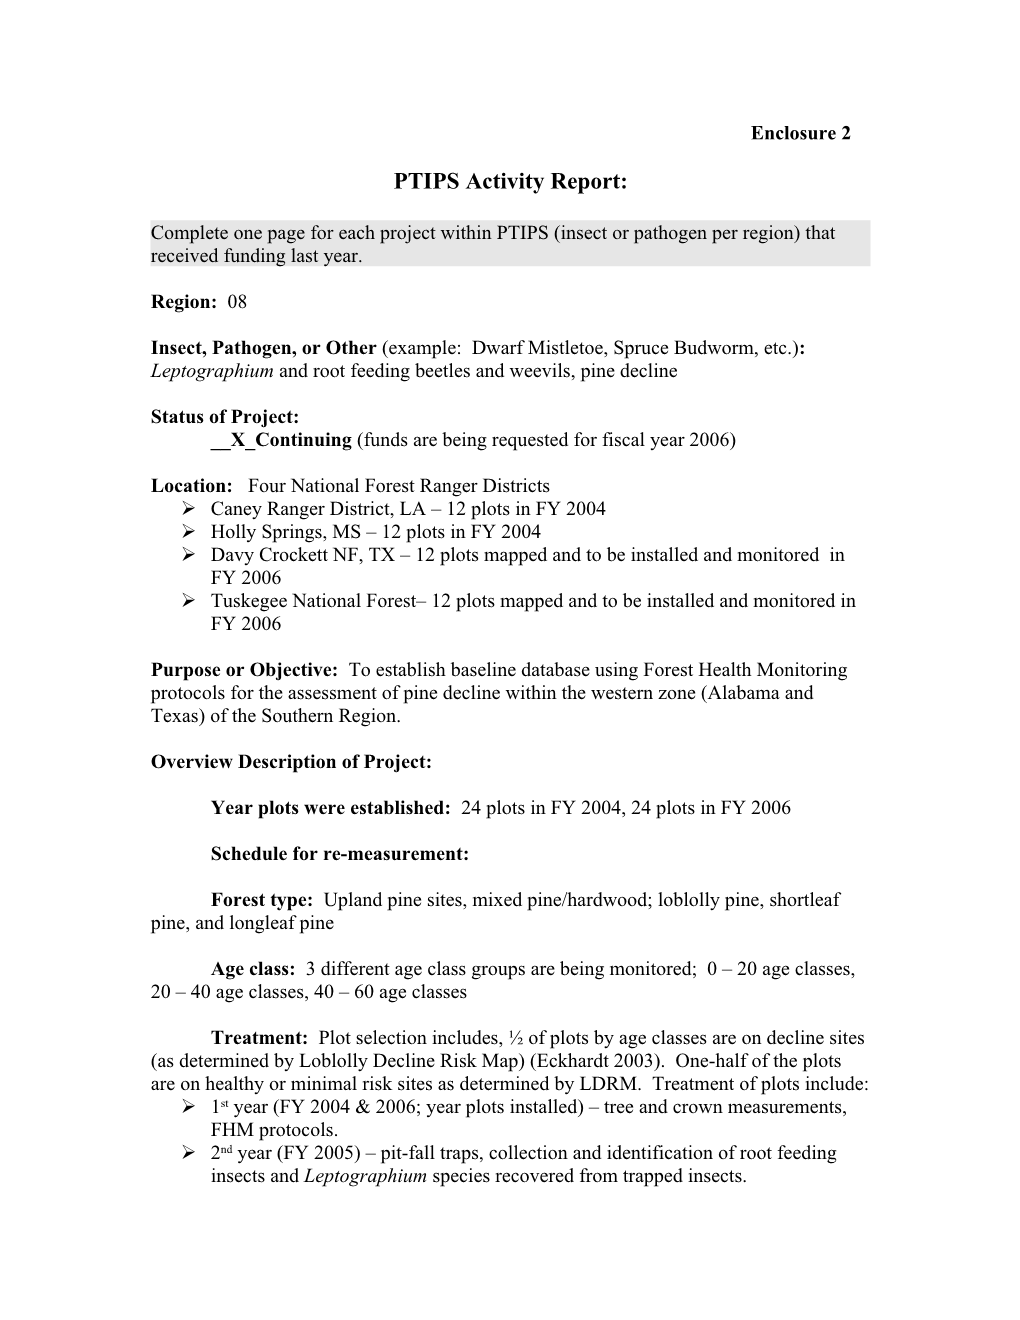 PTIPS Activity Report